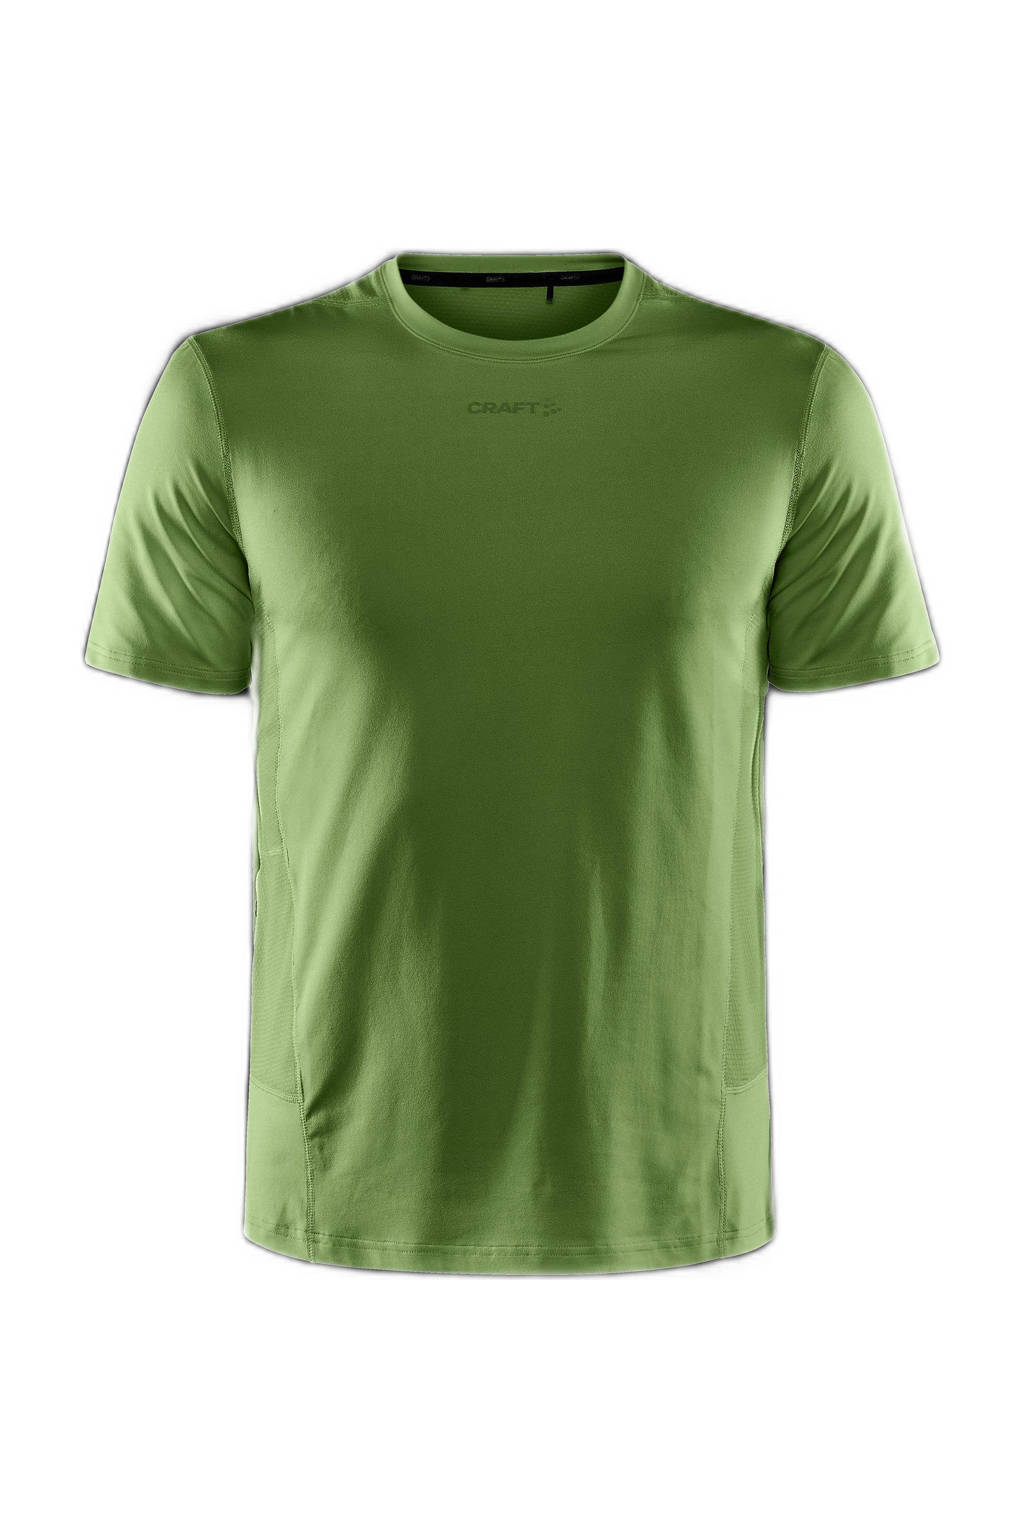 Craft   sport T-shirt ADC Essence groen, Groen